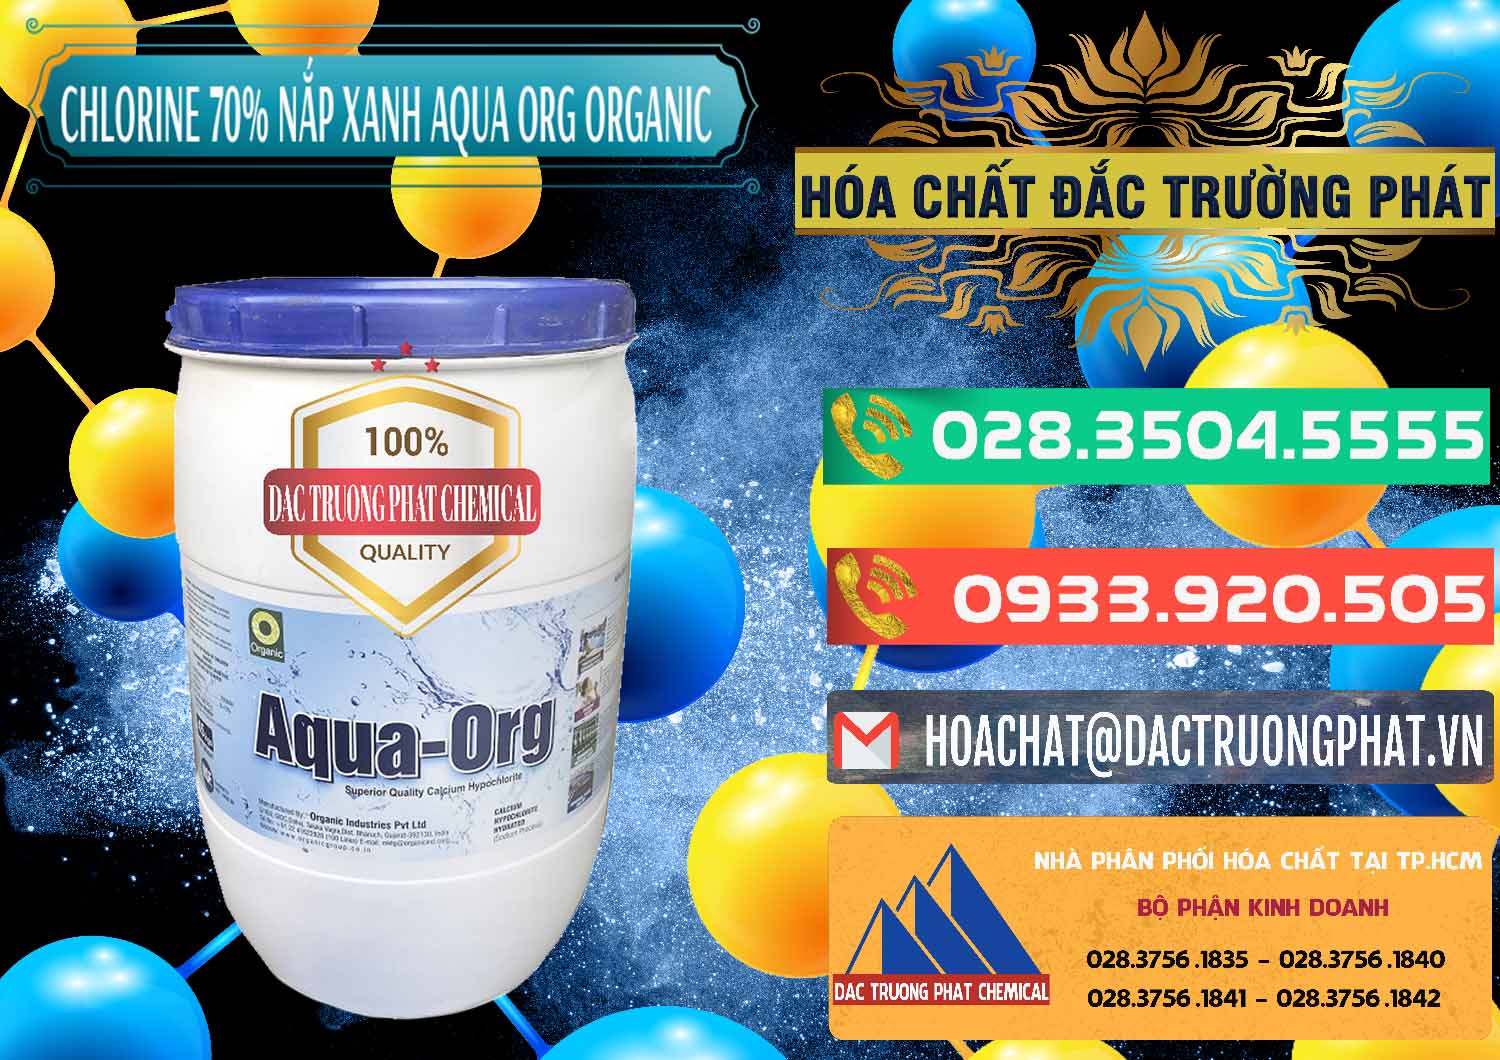 Cty nhập khẩu - bán Chlorine – Clorin 70% Thùng Tròn Nắp Xanh Aqua ORG Organic Ấn Độ India - 0247 - Cty chuyên bán ( phân phối ) hóa chất tại TP.HCM - congtyhoachat.com.vn